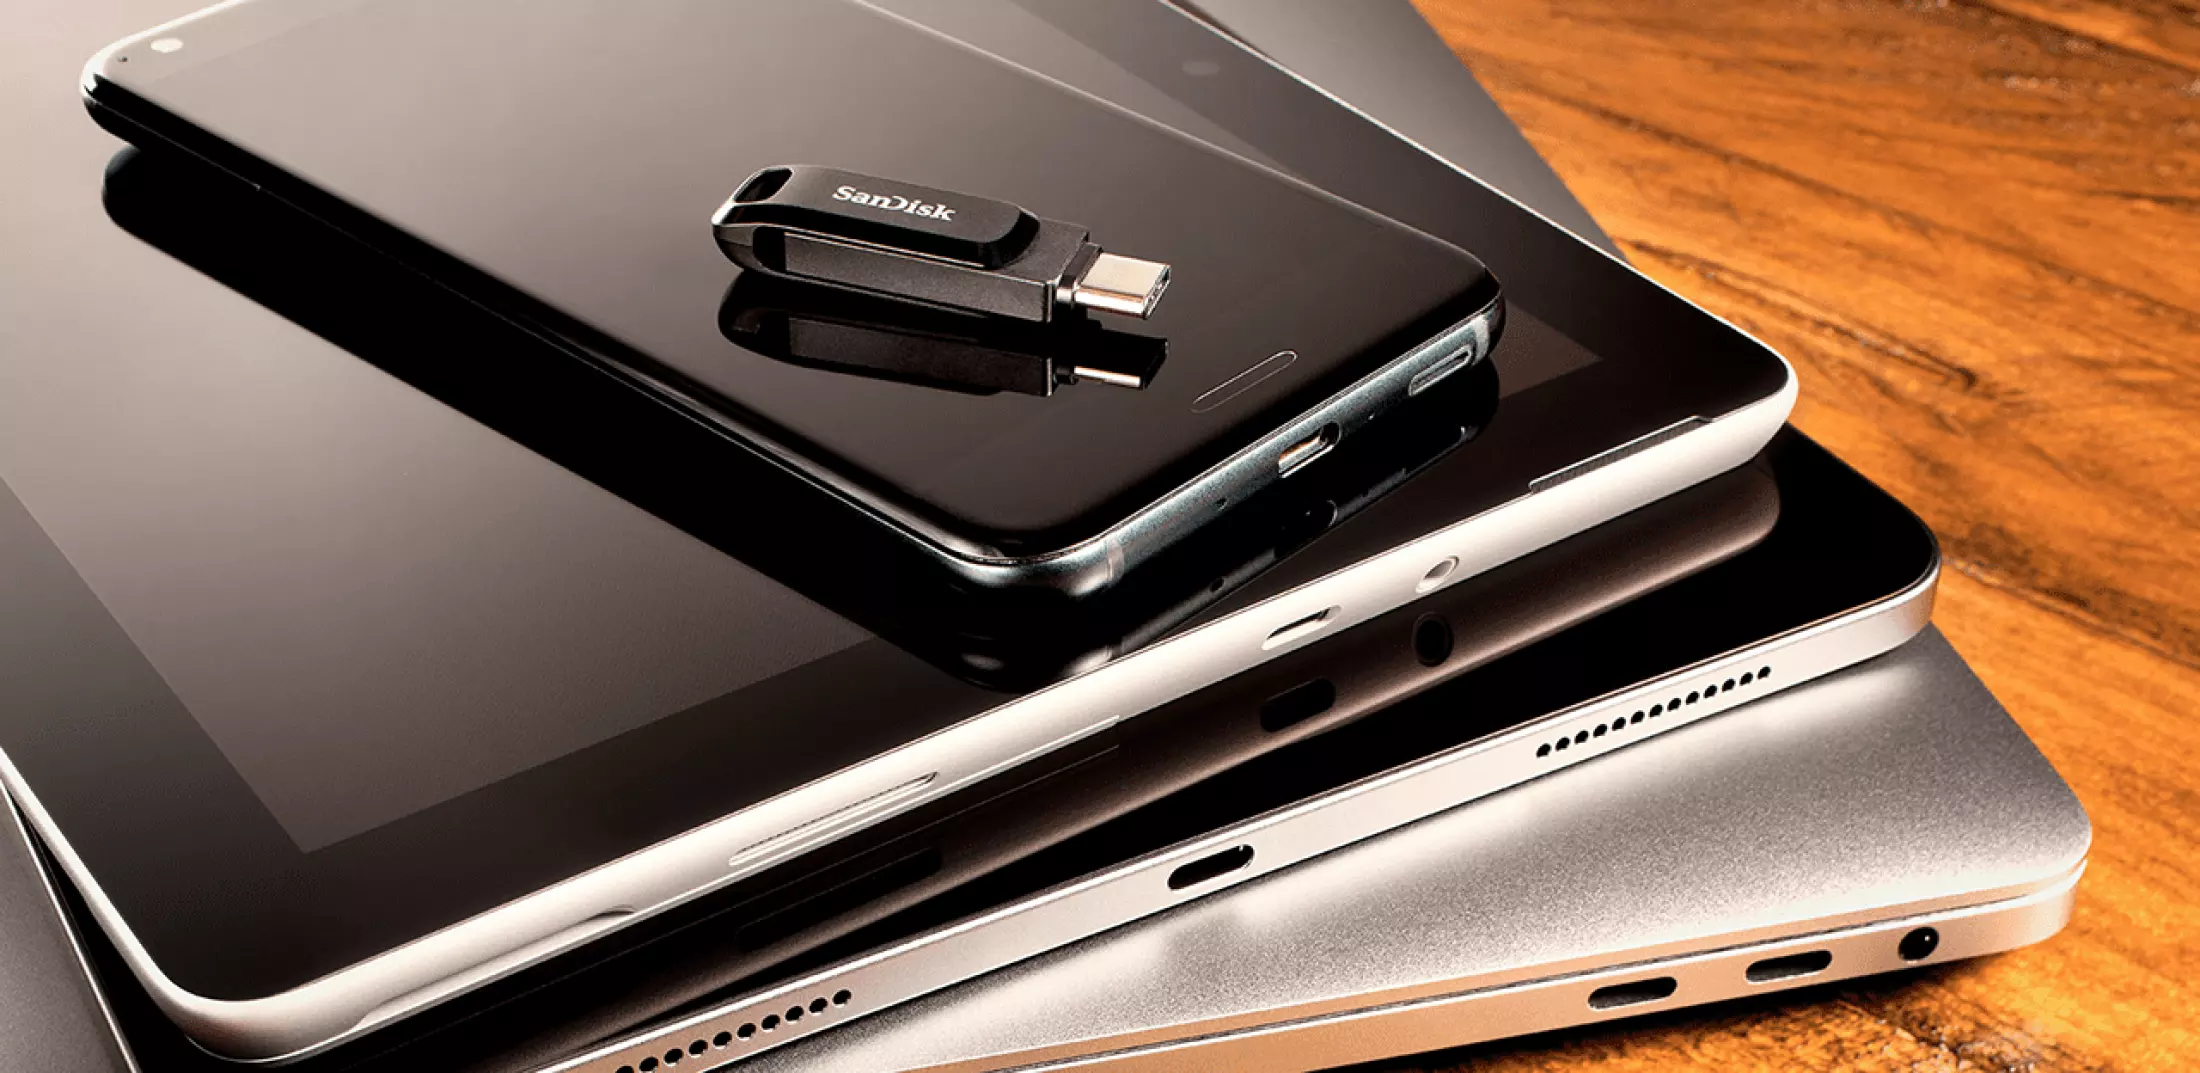 USB flashdisk Sandisk Ultra Dual Drive Go má speciální otvor pro zavěšení na klíče, náramek či k peněžence, takže jej budete mít neustále u sebe připravený k použití.